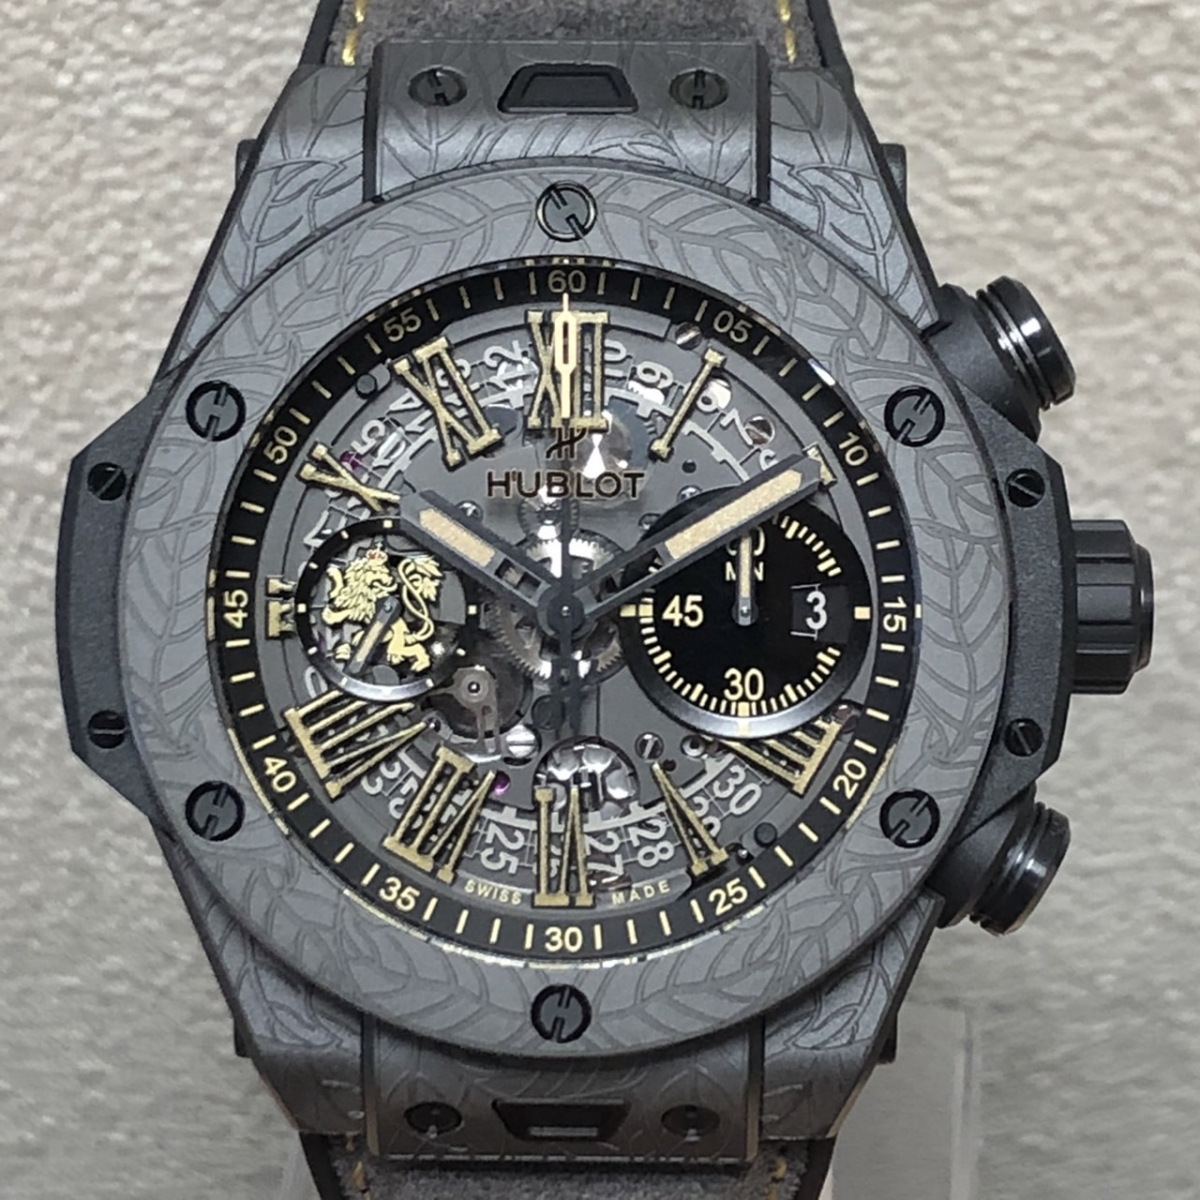 ウブロの×アルトゥーロフエンテ100本限定コラボモデル ビッグバンウニコ セラミック44mm 421.CI.0190.VR.OPX21 腕時計の買取実績です。